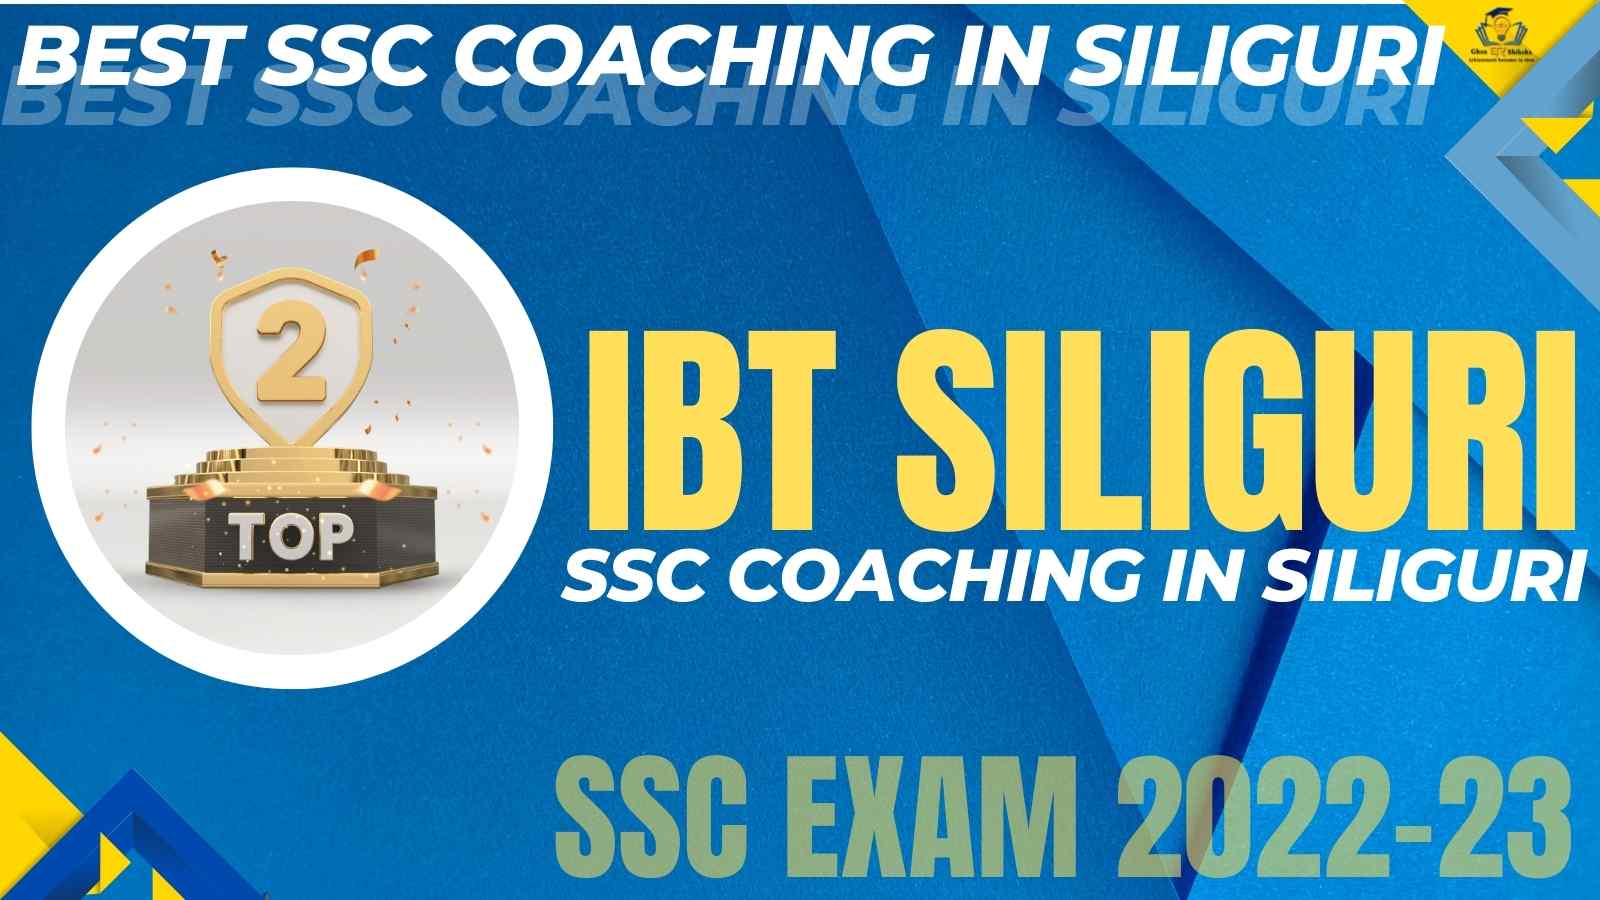 SSC Coaching Institute In Siliguri